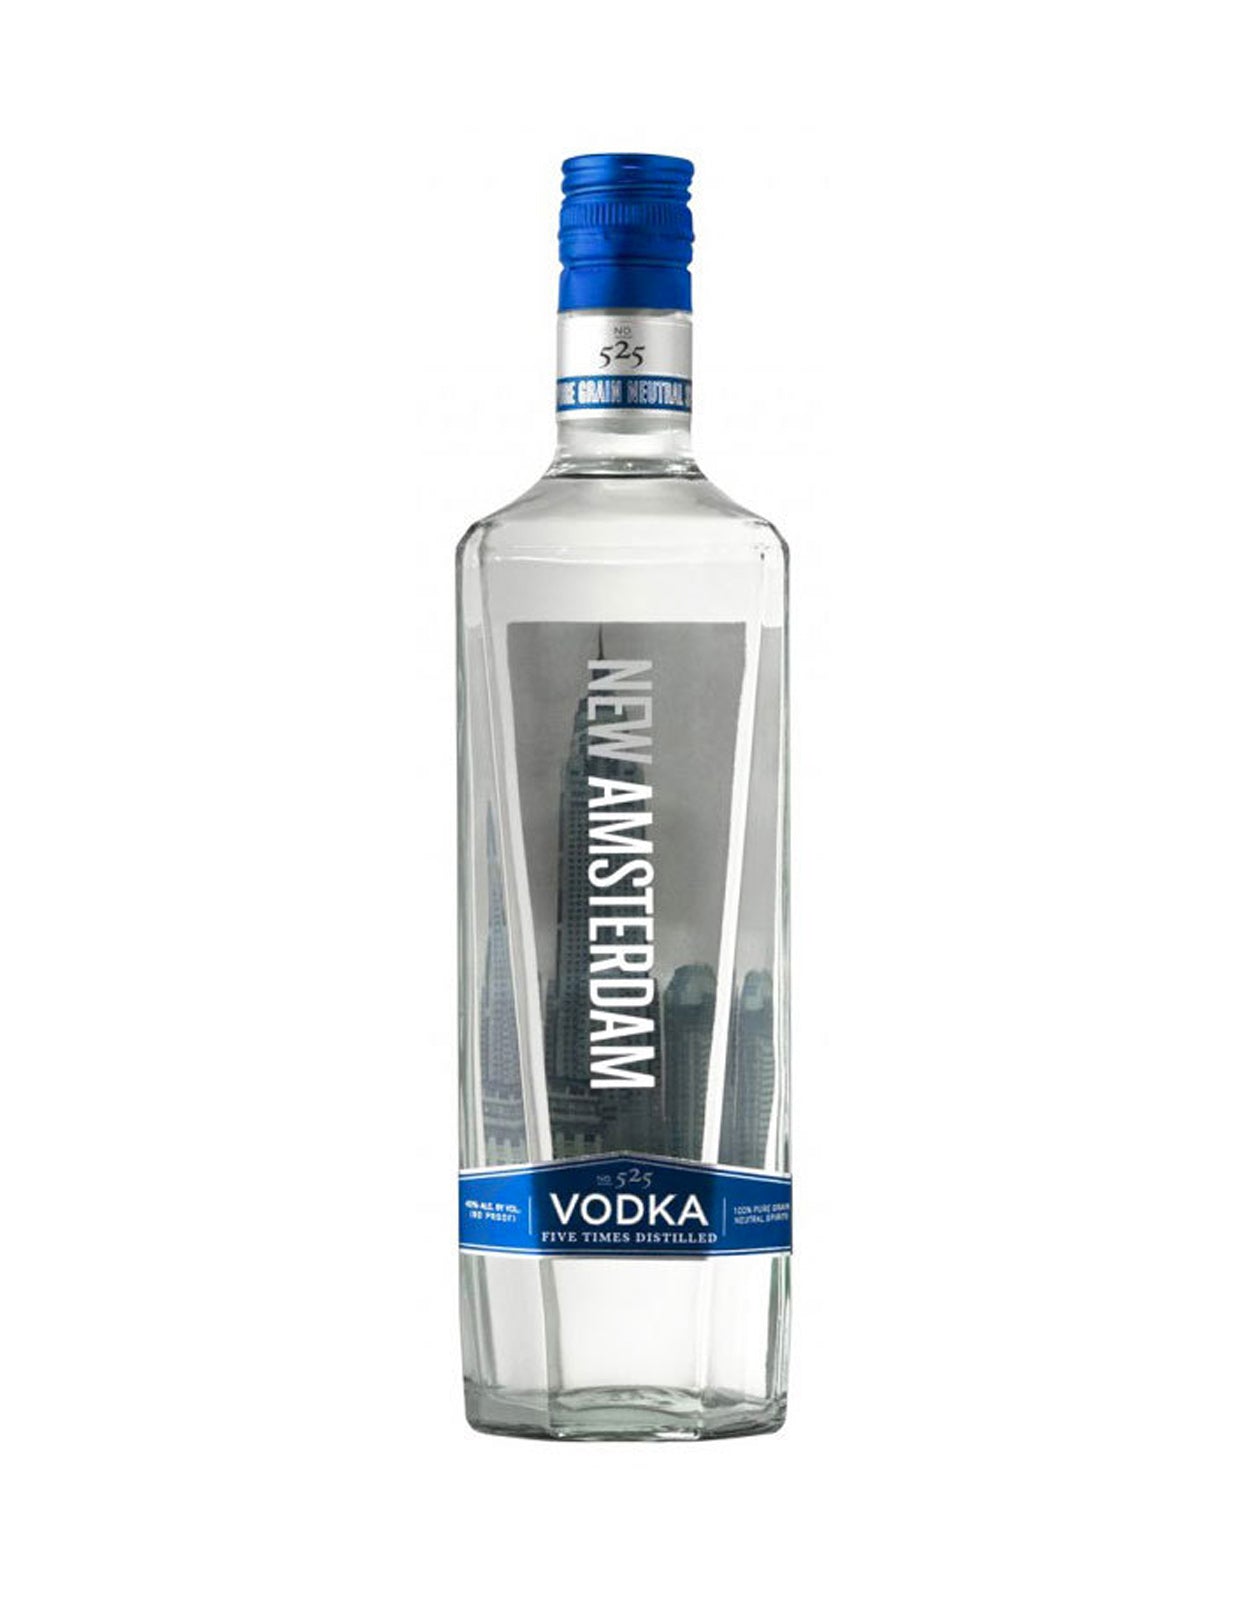 New Amsterdam Vodka - 1.14 Litre Bottle